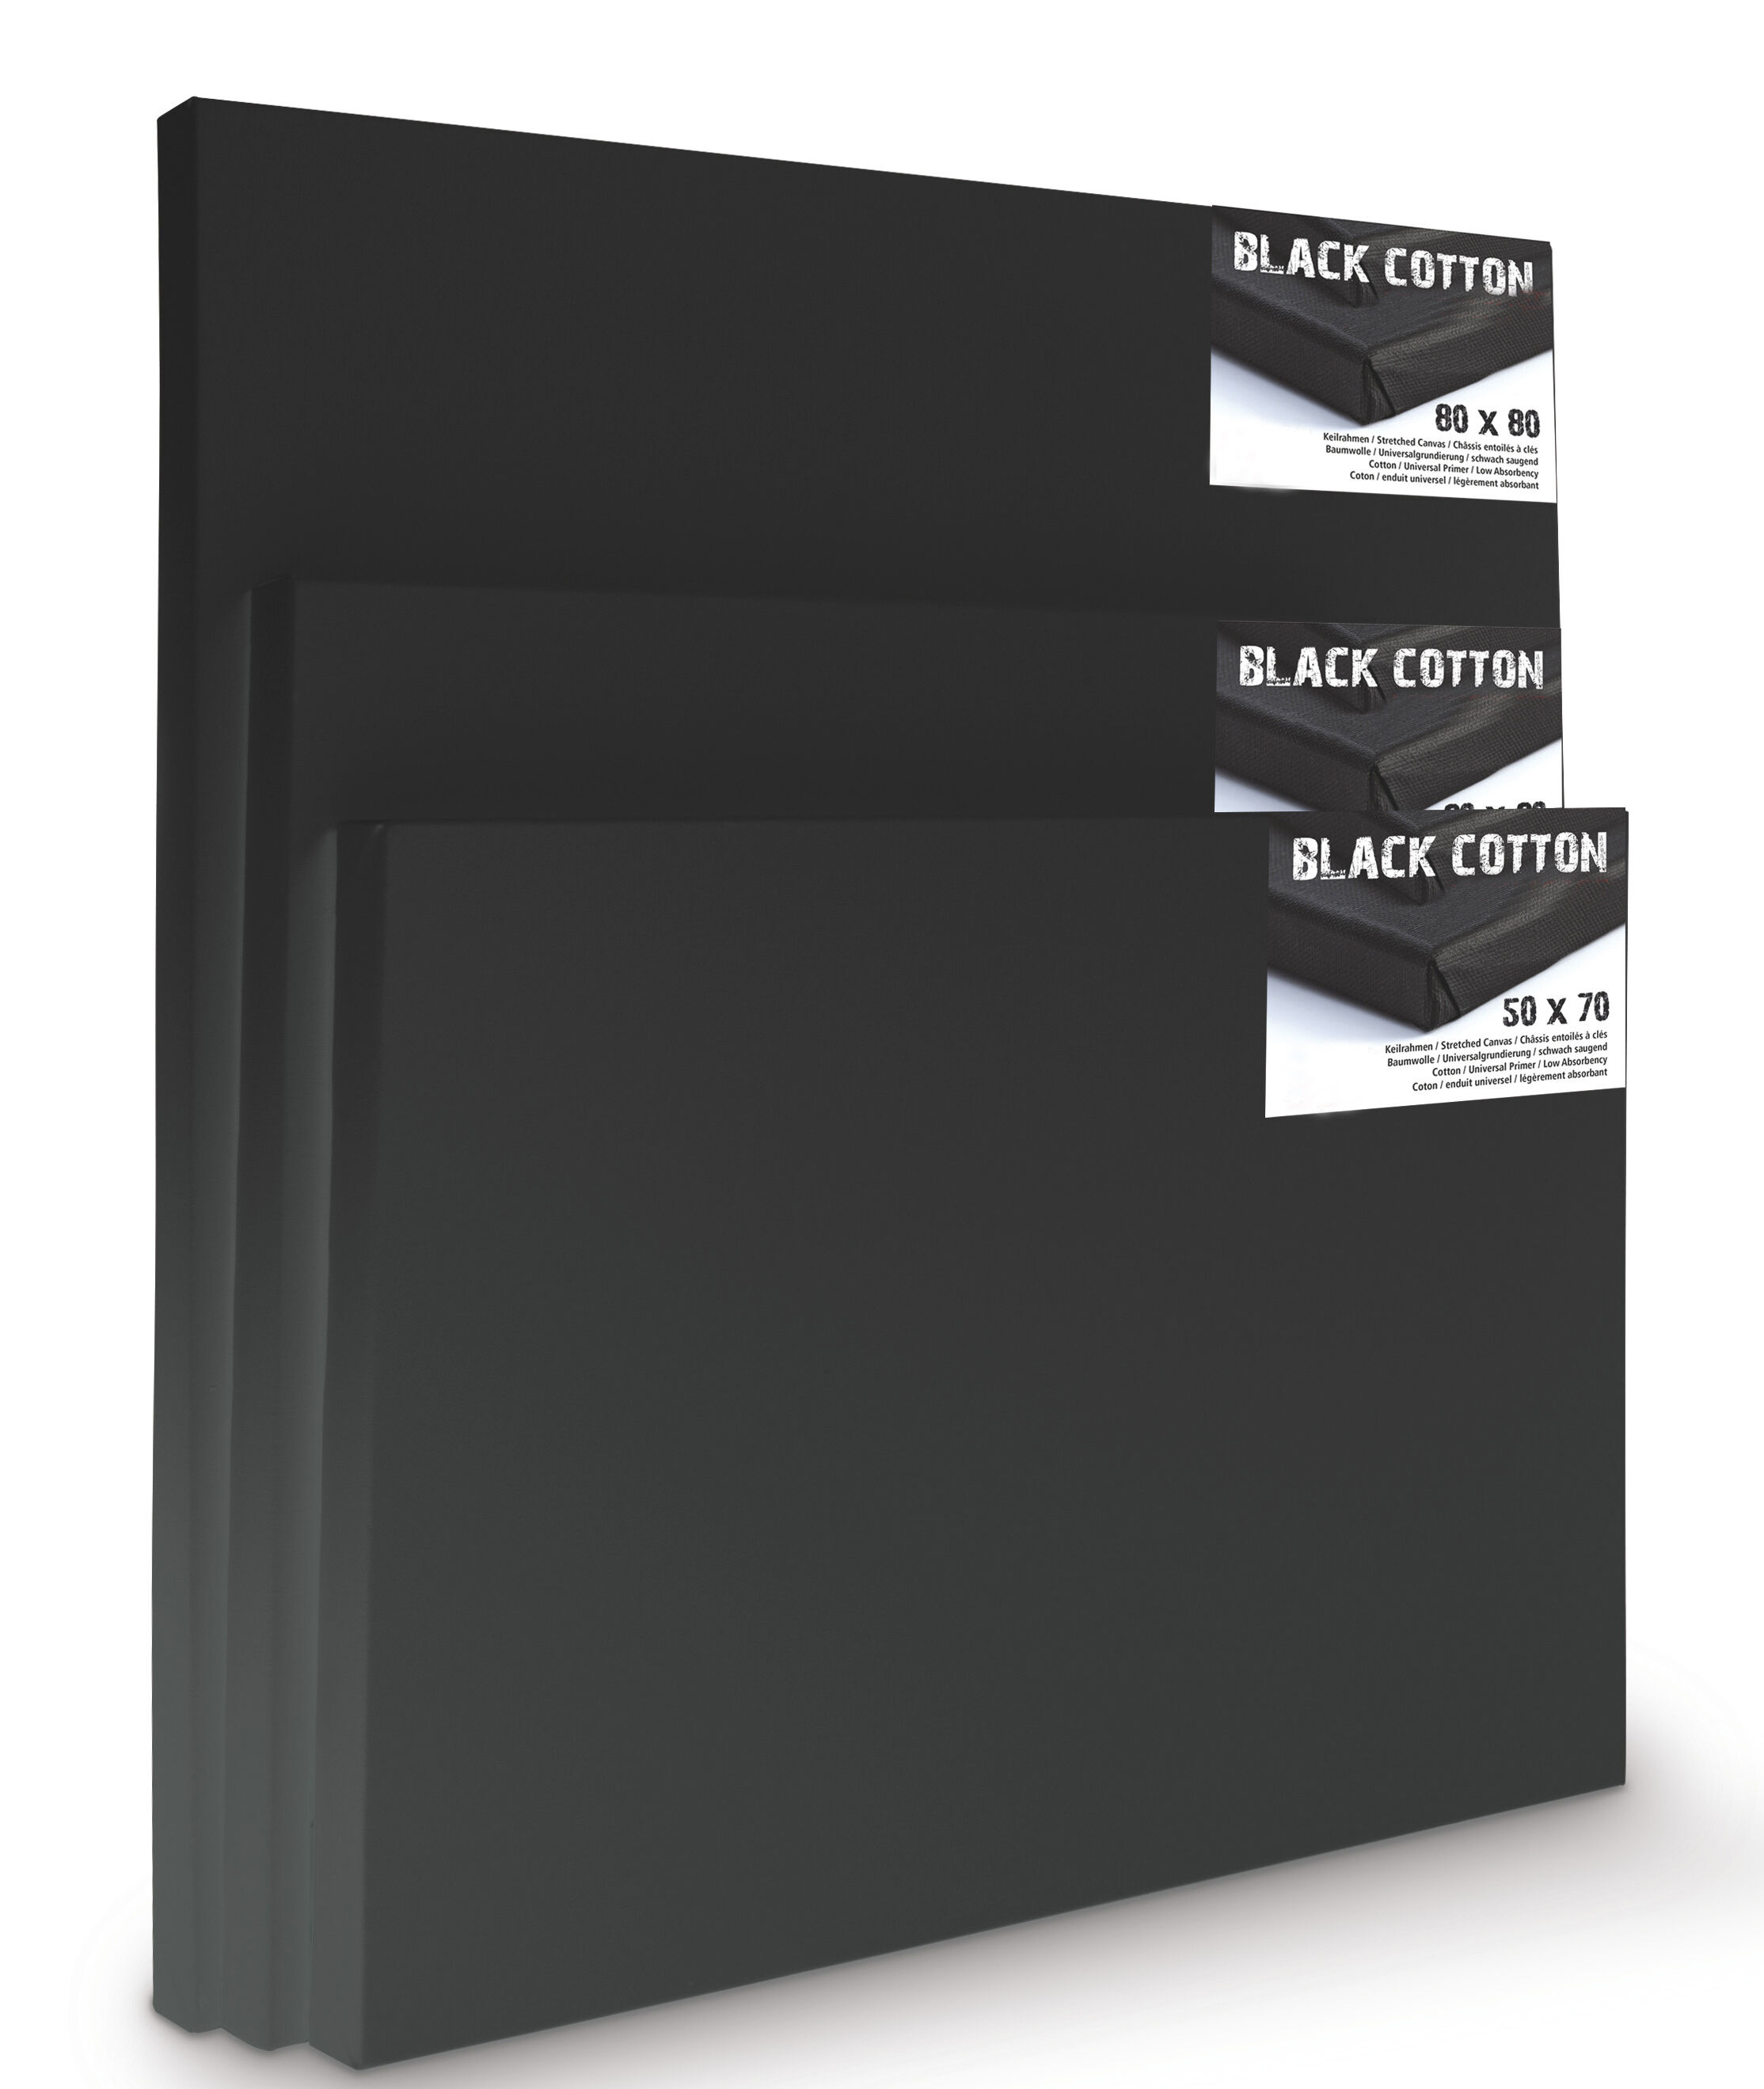 NEU Premium-Keilrahmen, schwarz grundiert, Vernissage 45mm Leistenstärke, 60x60cm - 1 Stück